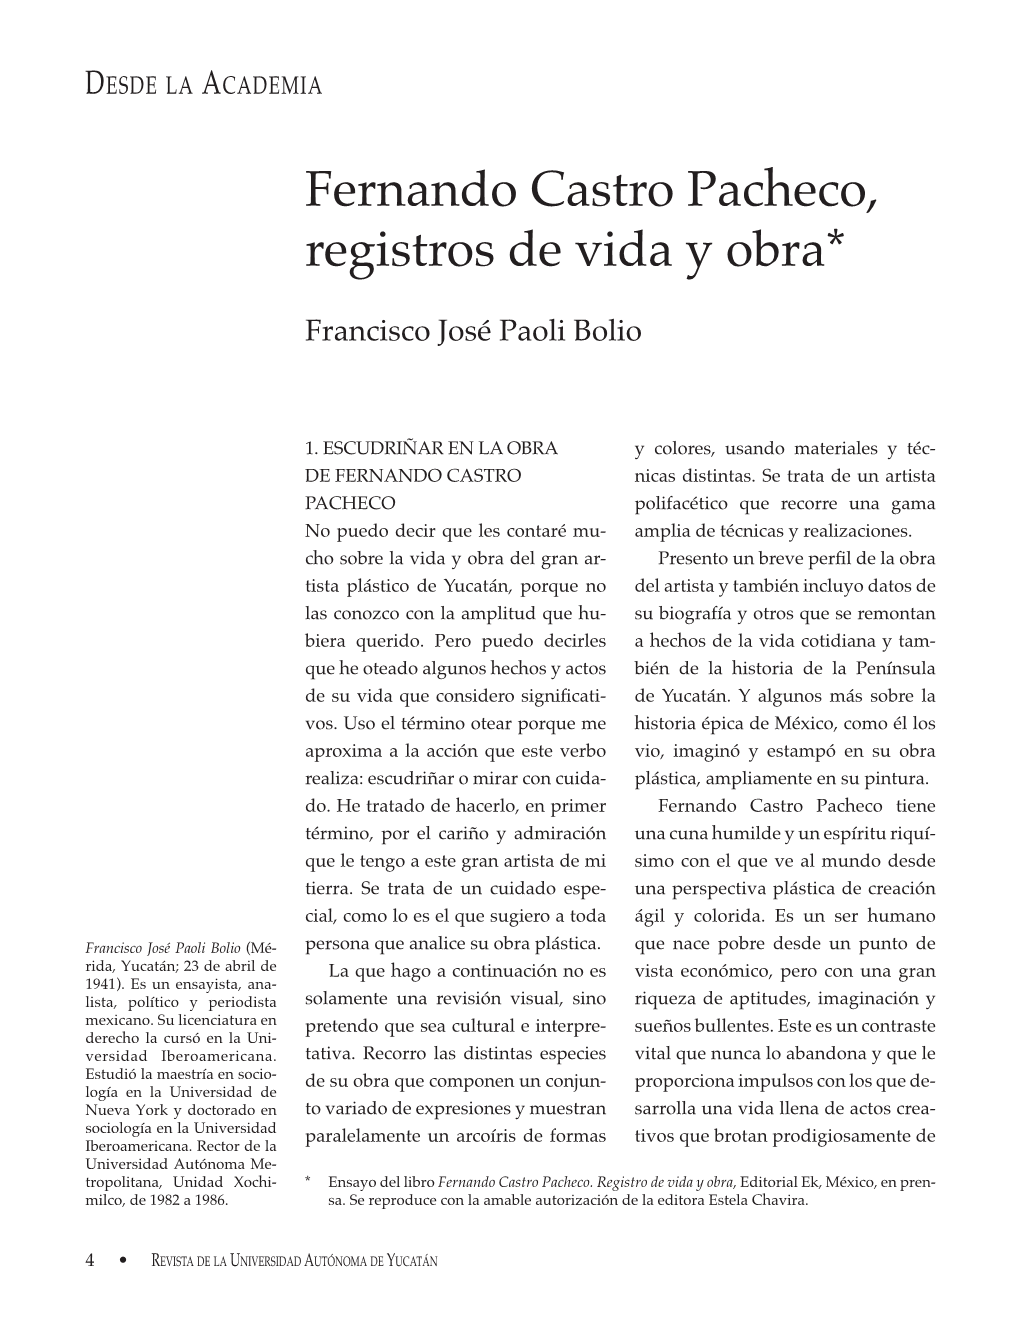 Fernando Castro Pacheco, Registros De Vida Y Obra*